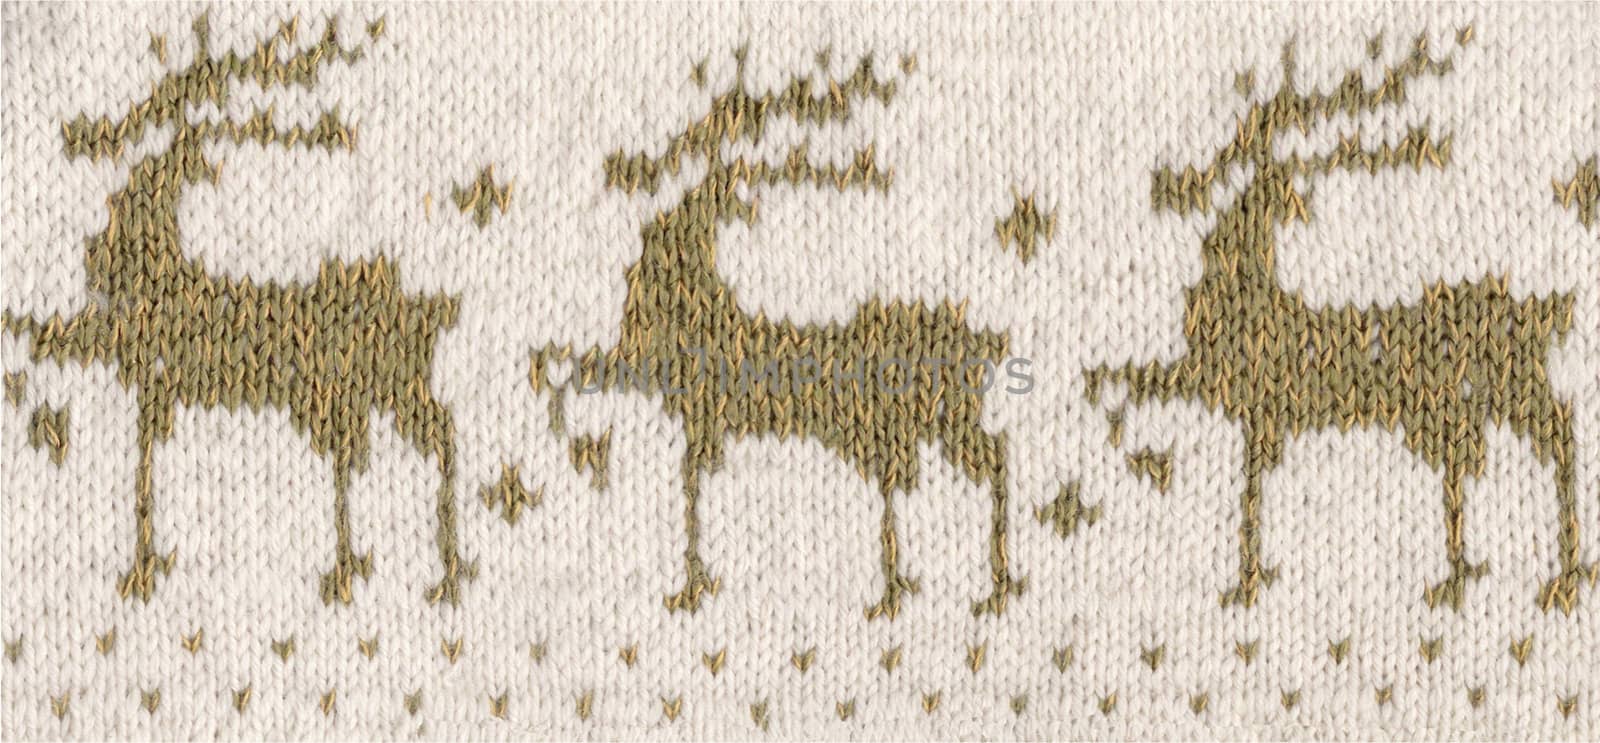 my handmade knitted reindeers pattern